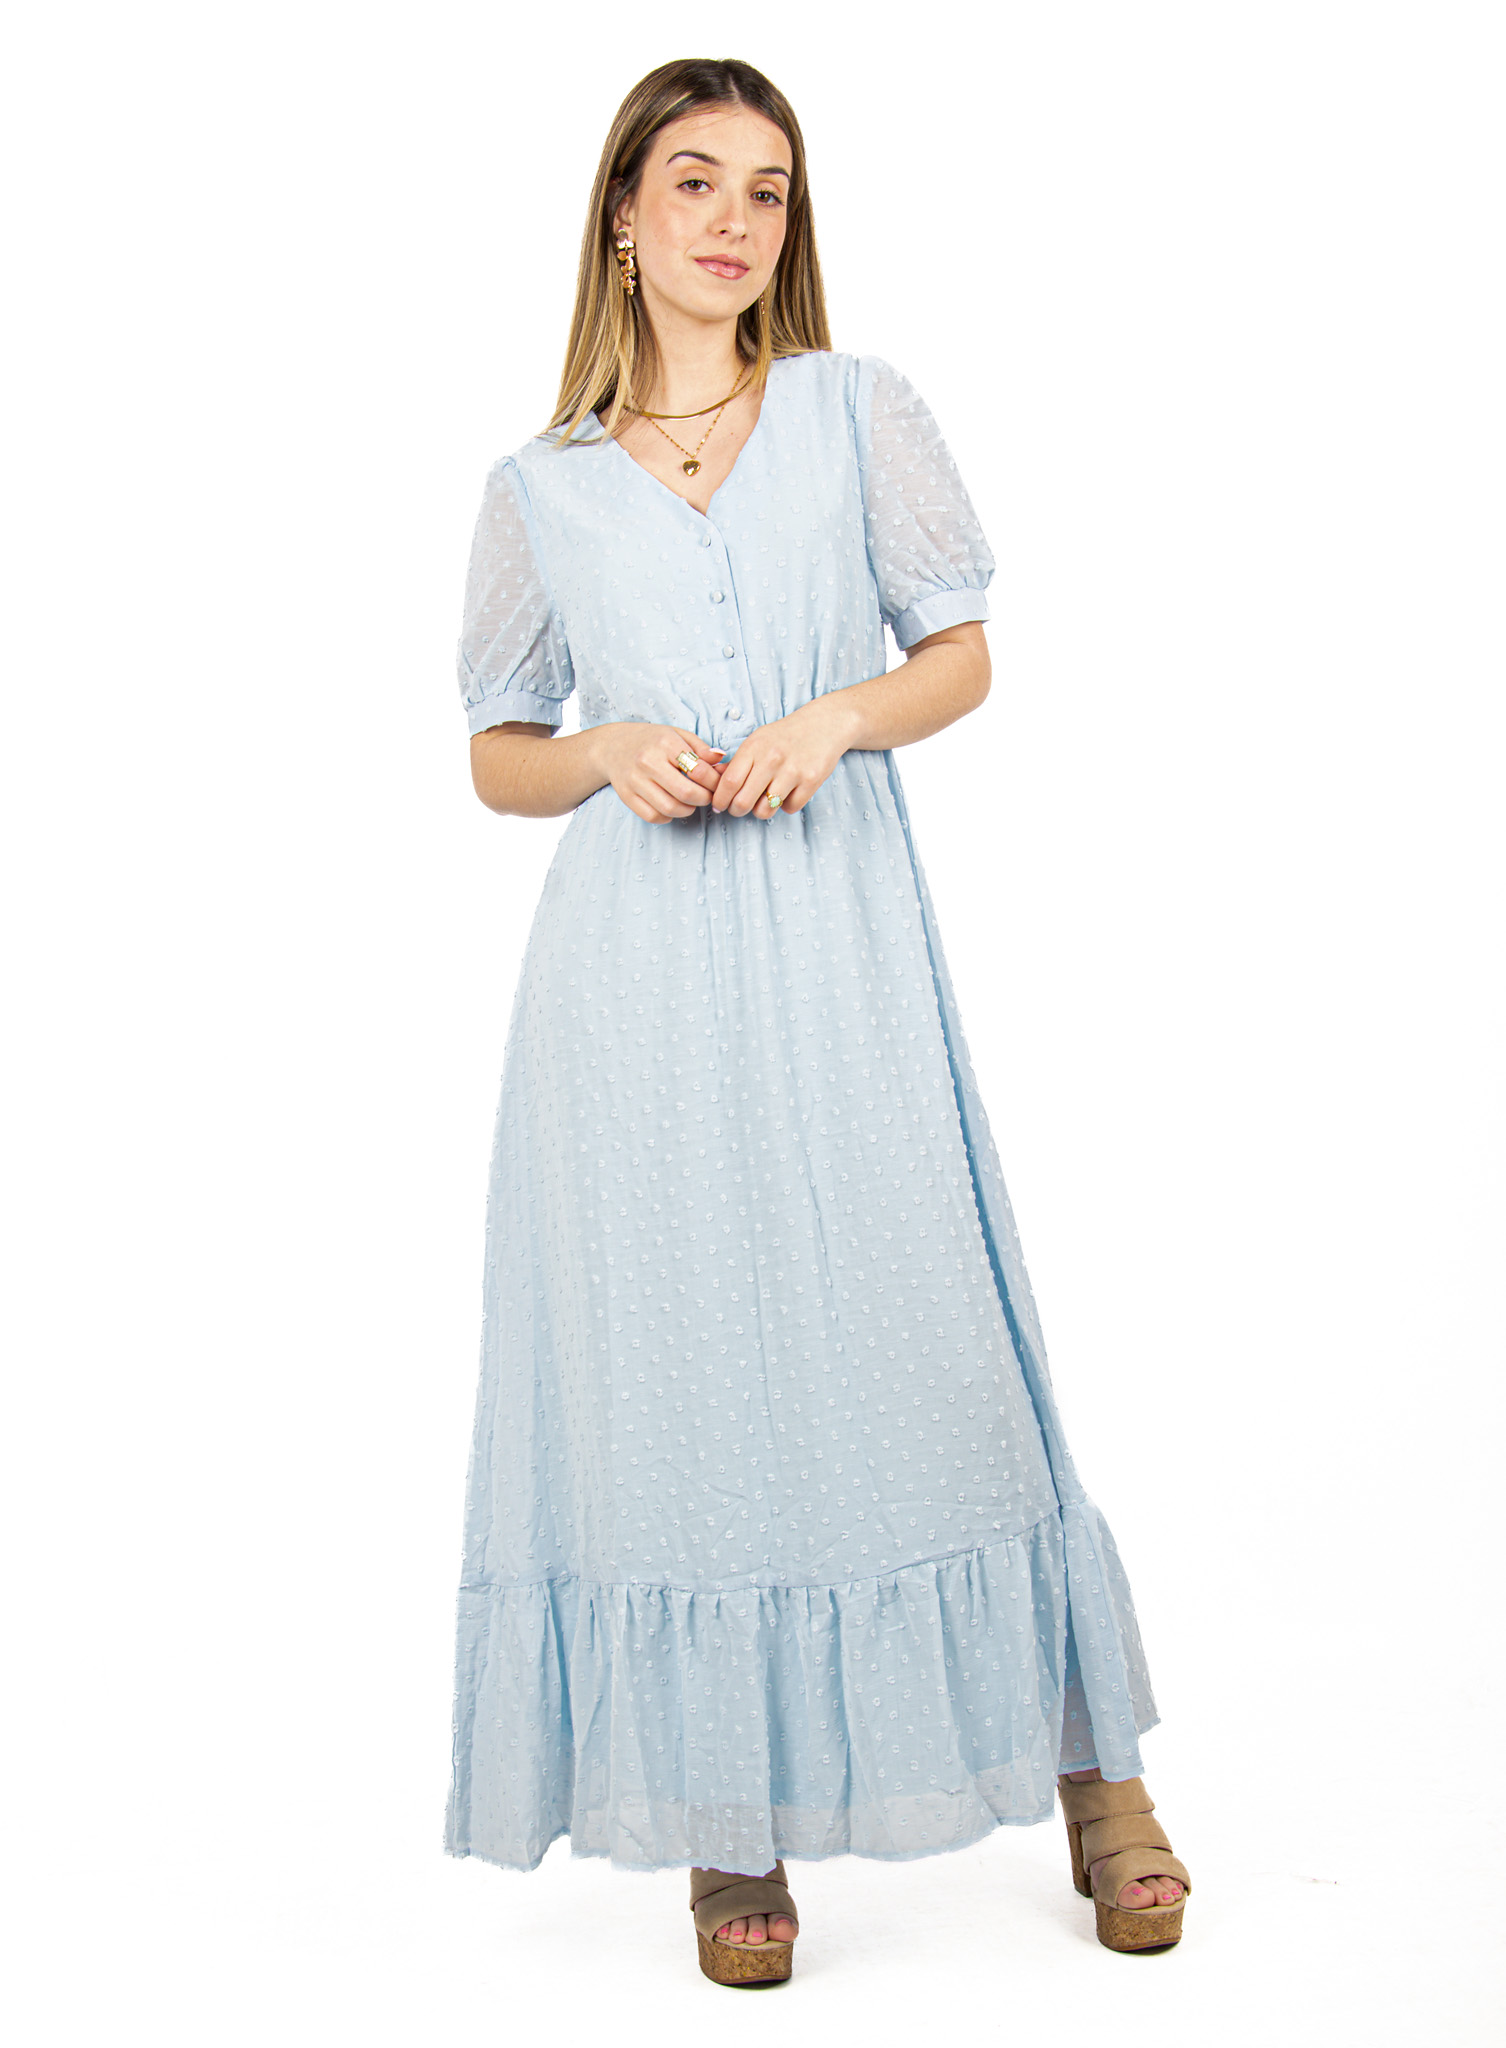 Φόρεμα Vintage Ανάγλυφο Γαλάζιο | EllenBoutique